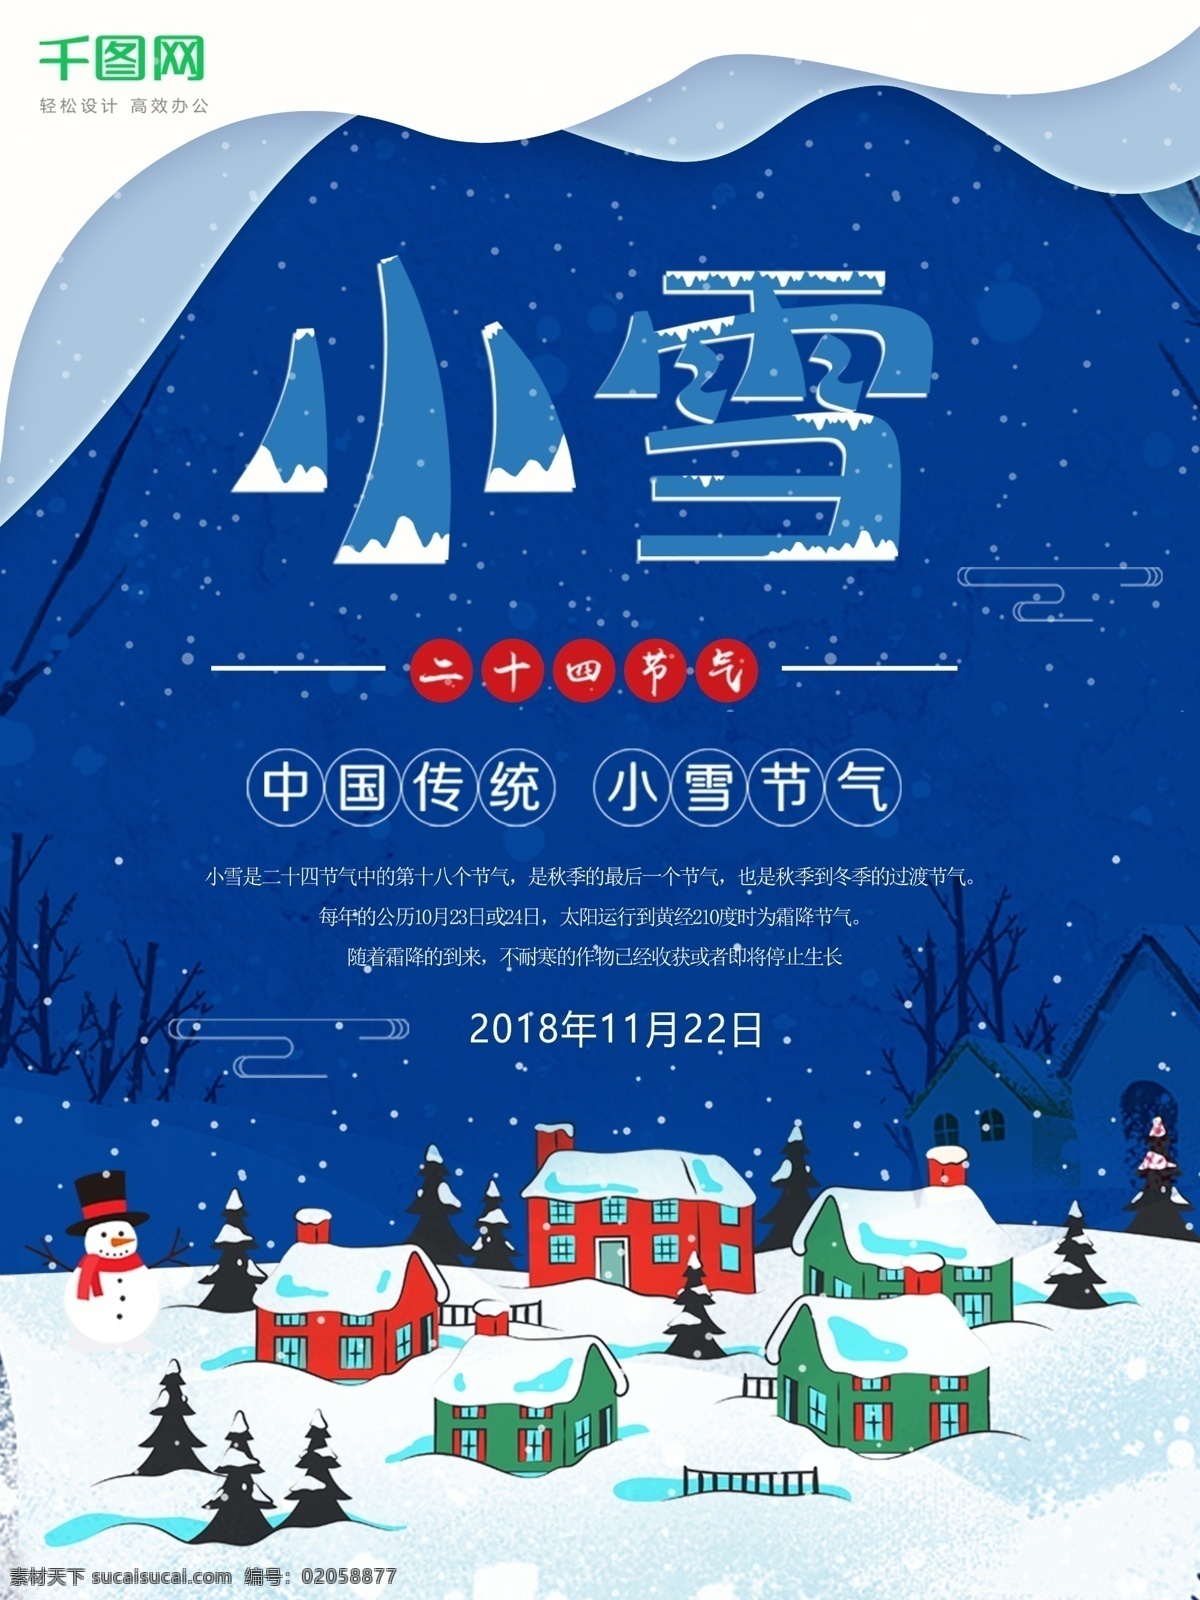 原创 手绘 二十四节气 小雪 海报 手绘小雪海报 中国传统节气 蓝色